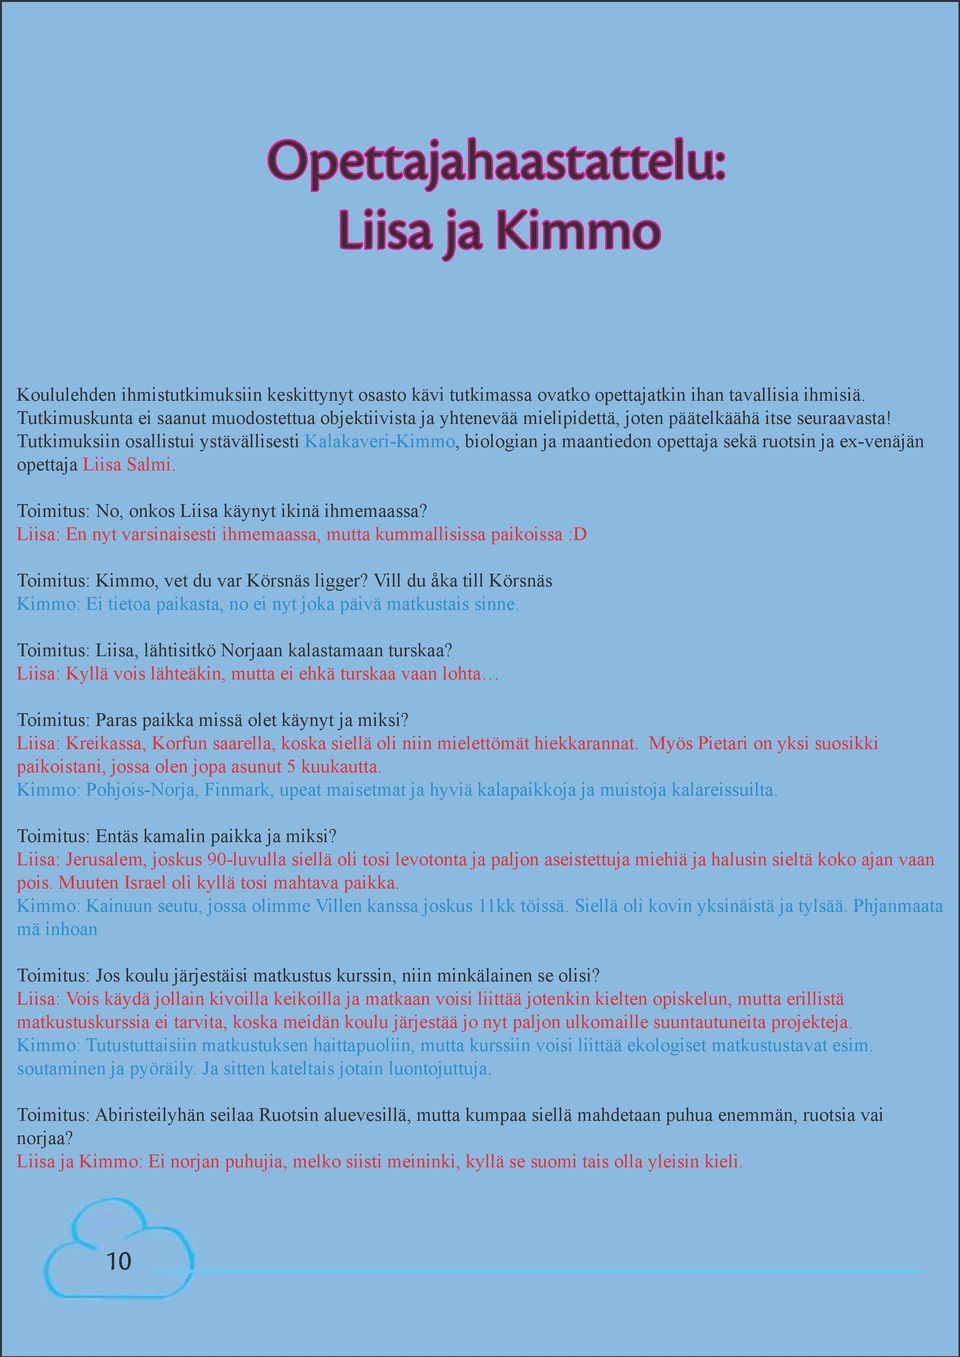 Tutkimuksiin osallistui ystävällisesti Kalakaveri-Kimmo, biologian ja maantiedon opettaja sekä ruotsin ja ex-venäjän opettaja Liisa Salmi. Toimitus: No, onkos Liisa käynyt ikinä ihmemaassa?